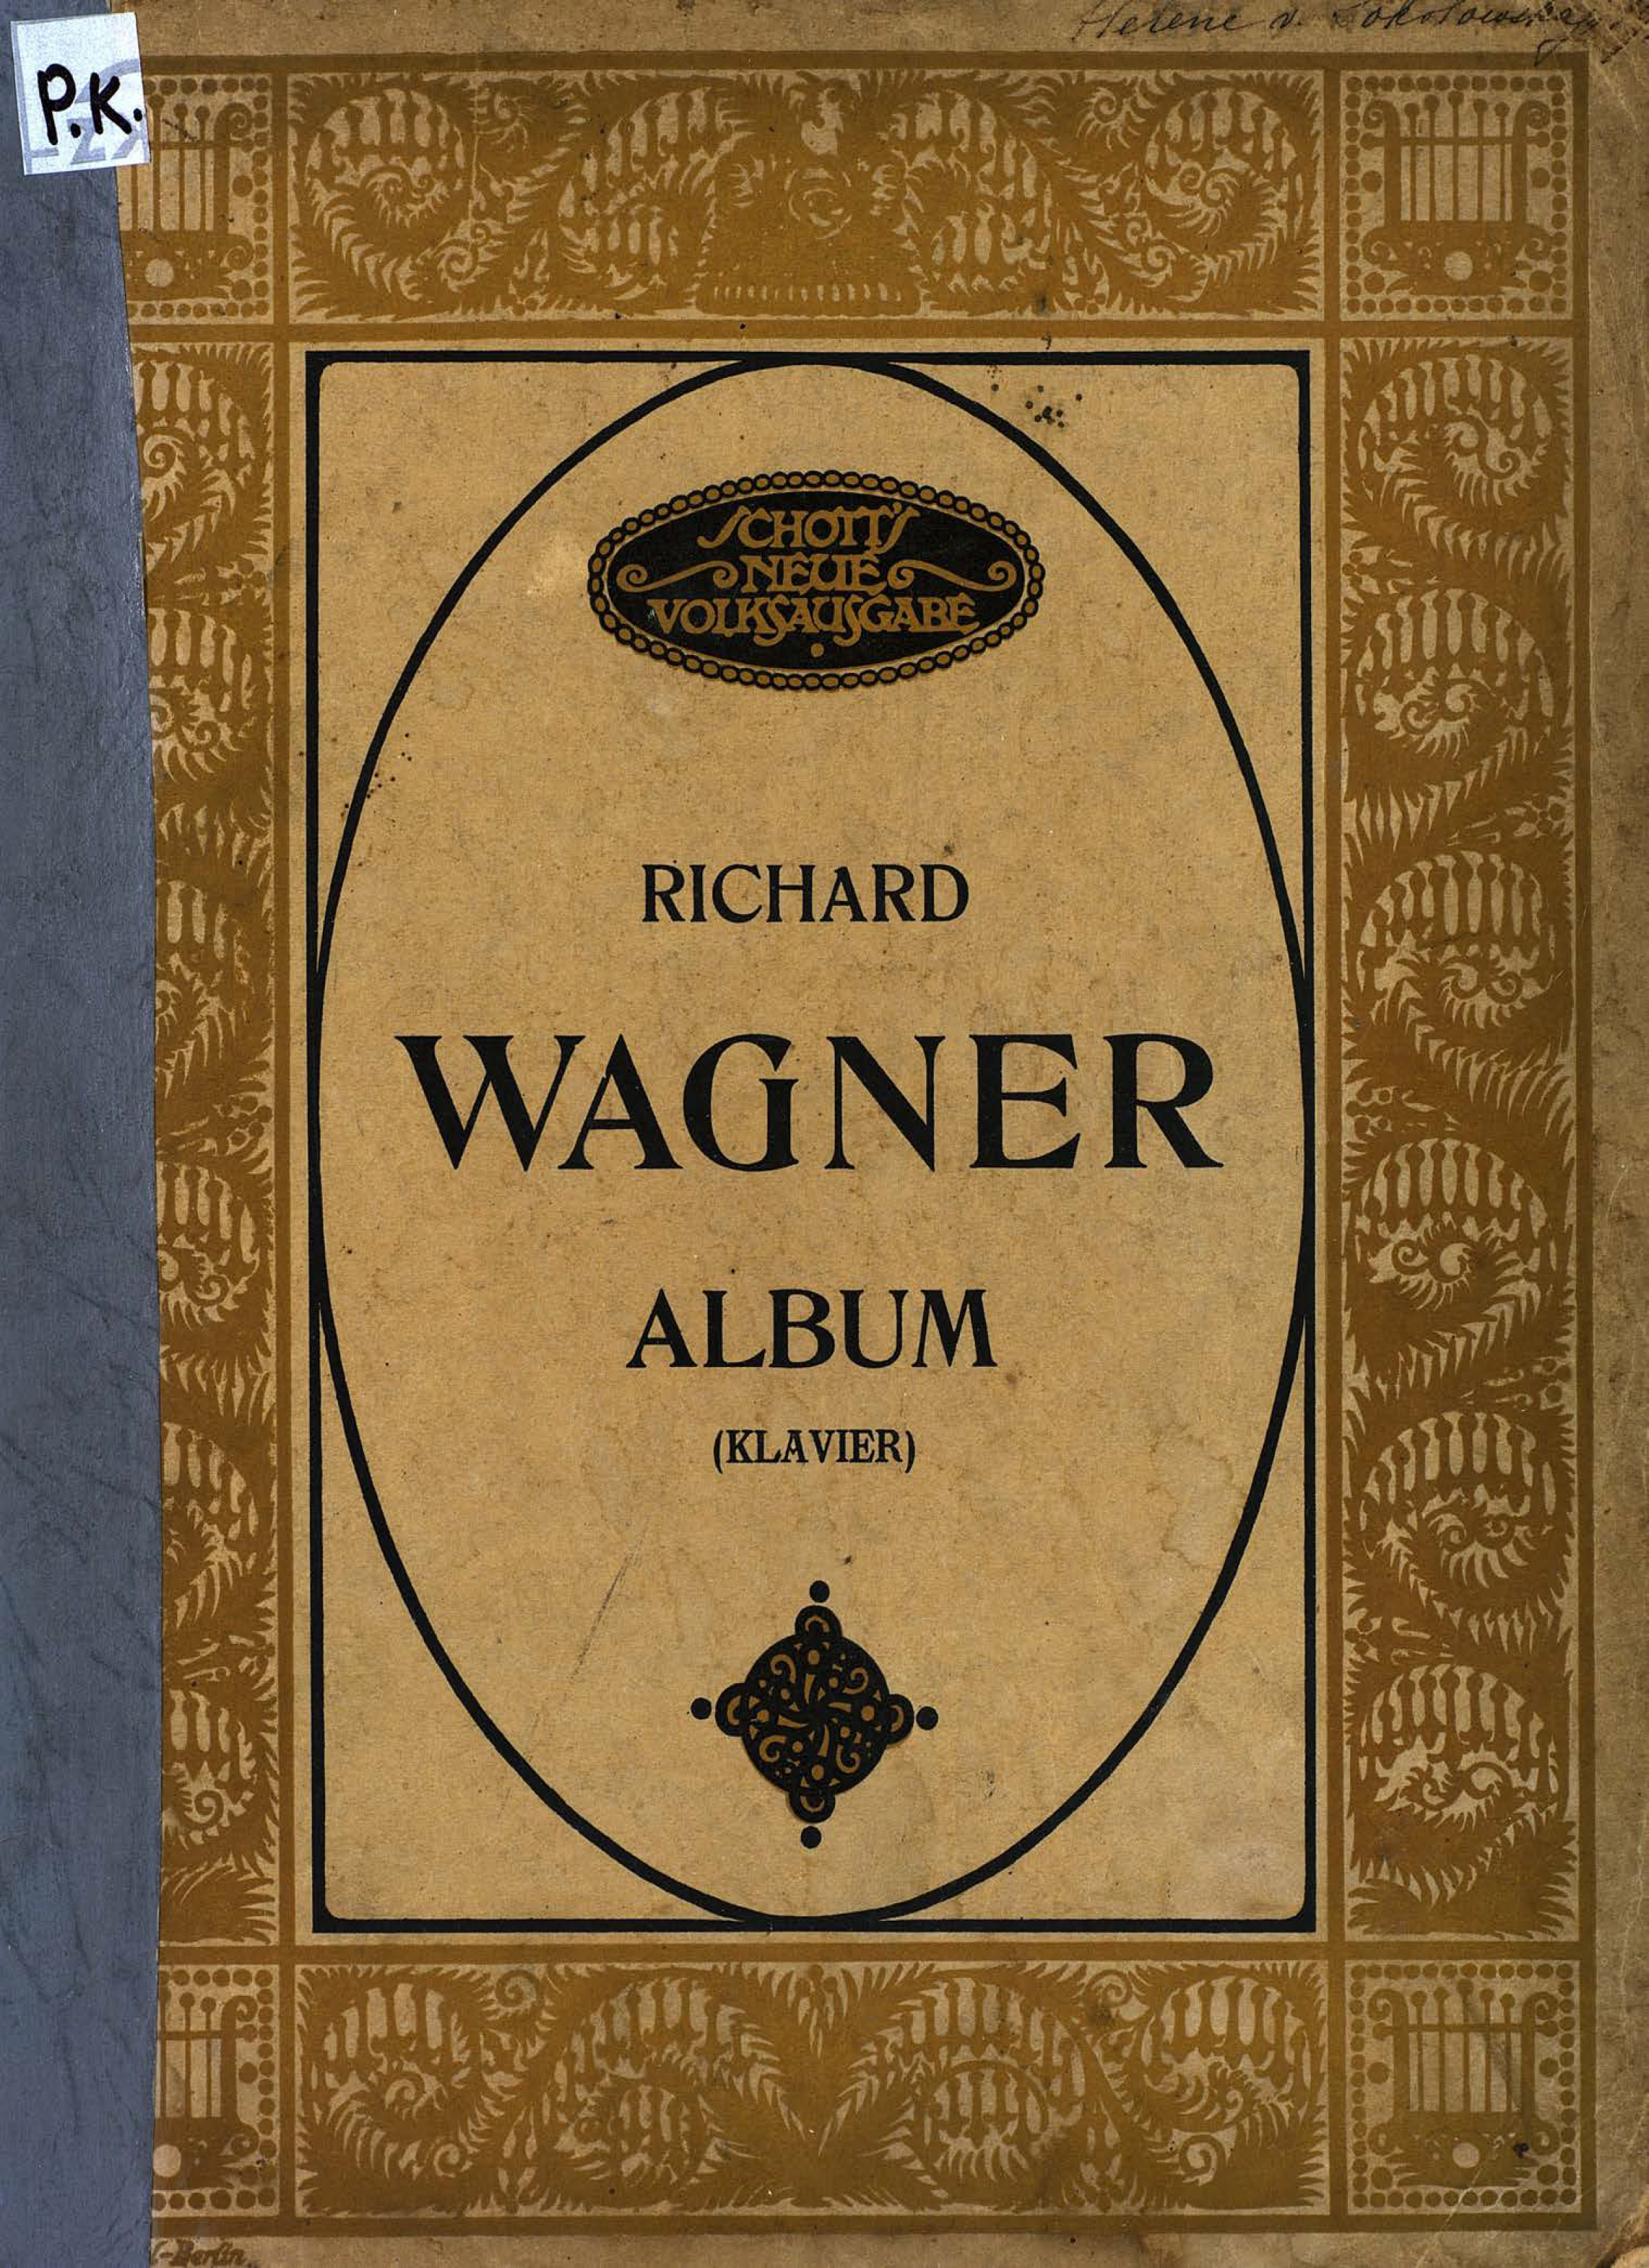 Richard Wagner Album